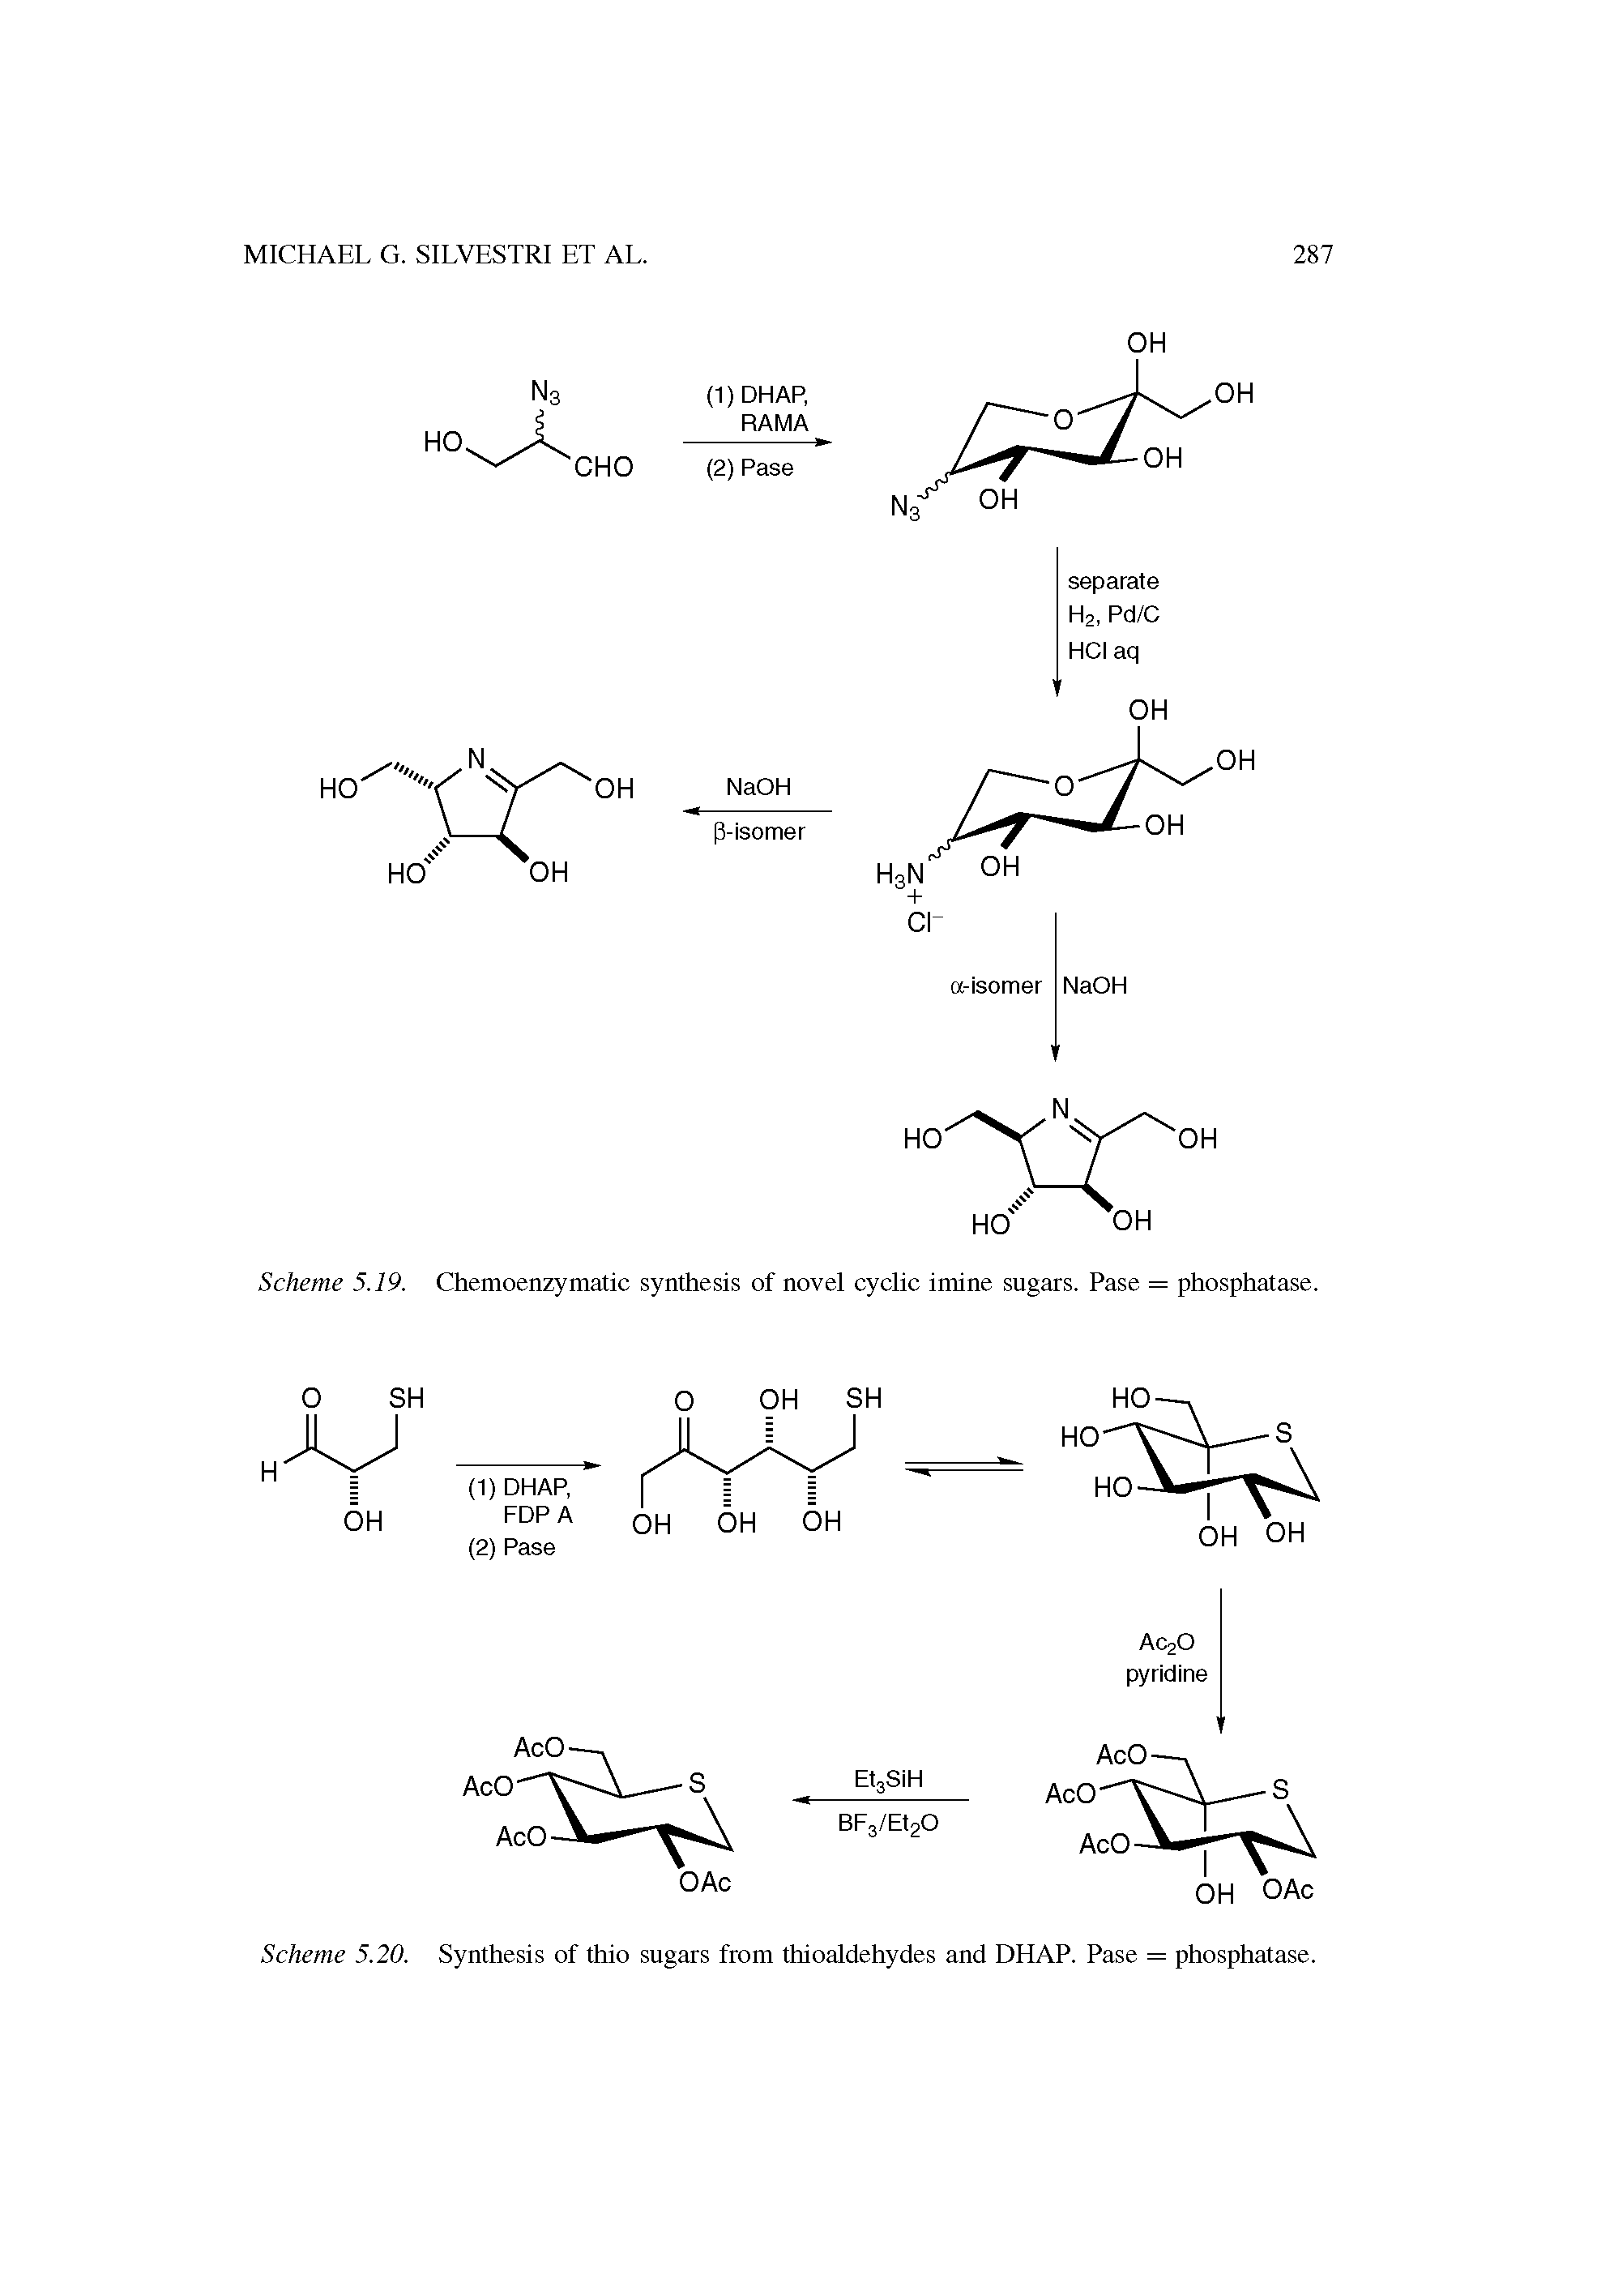 Scheme 5.19. Chemoenzymatic synthesis of novel cyclic imine sugars. Pase = phosphatase.